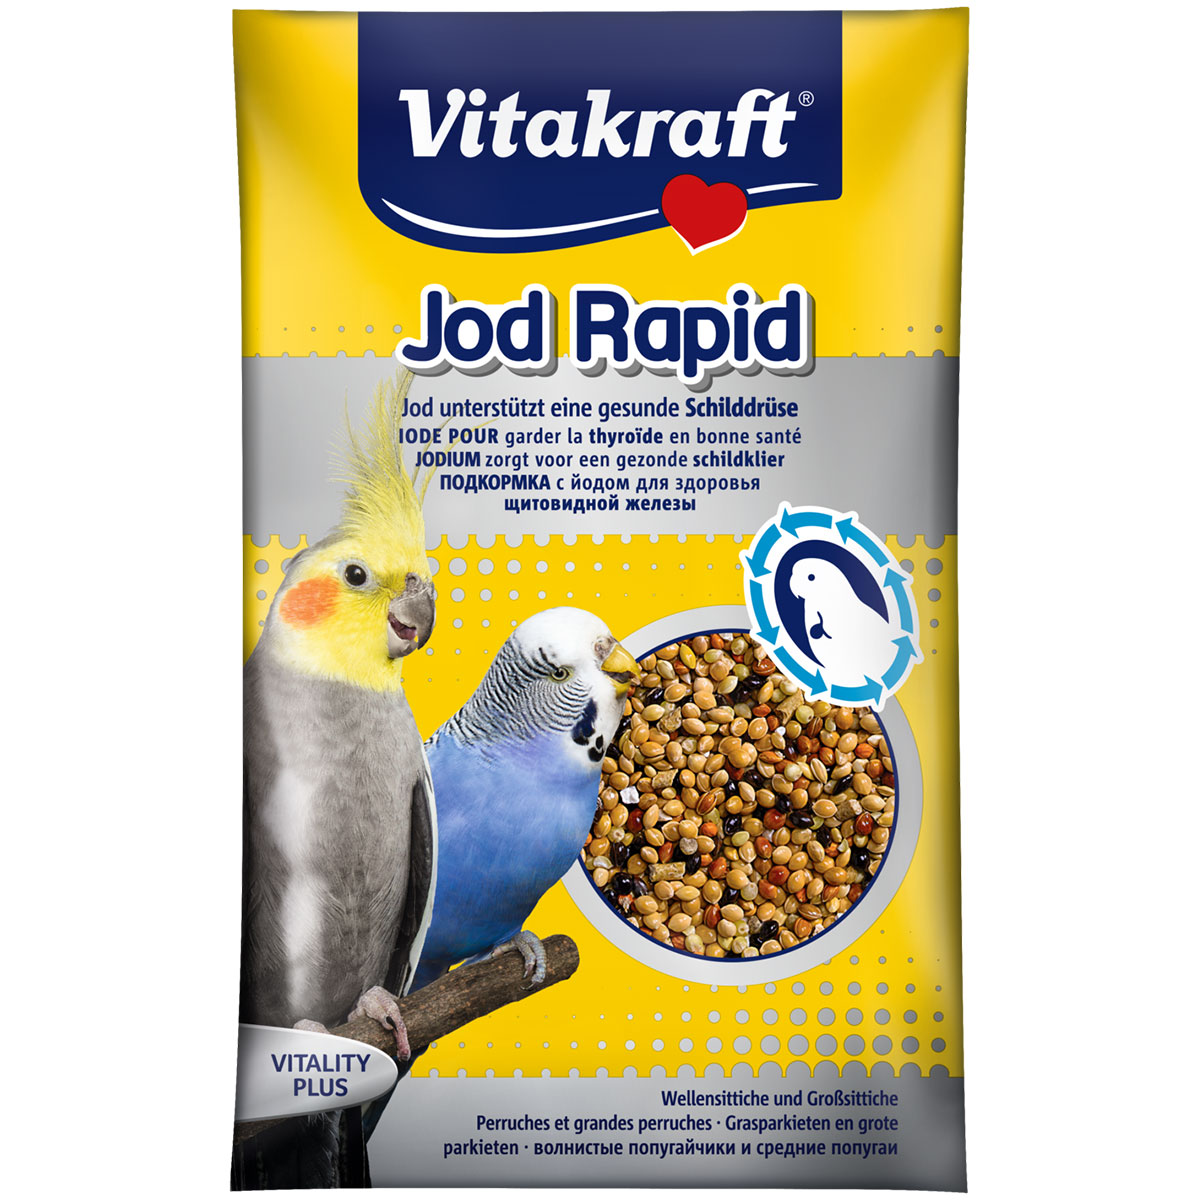 Vitakraft krmivo pro malé papoušky Jod Rapid